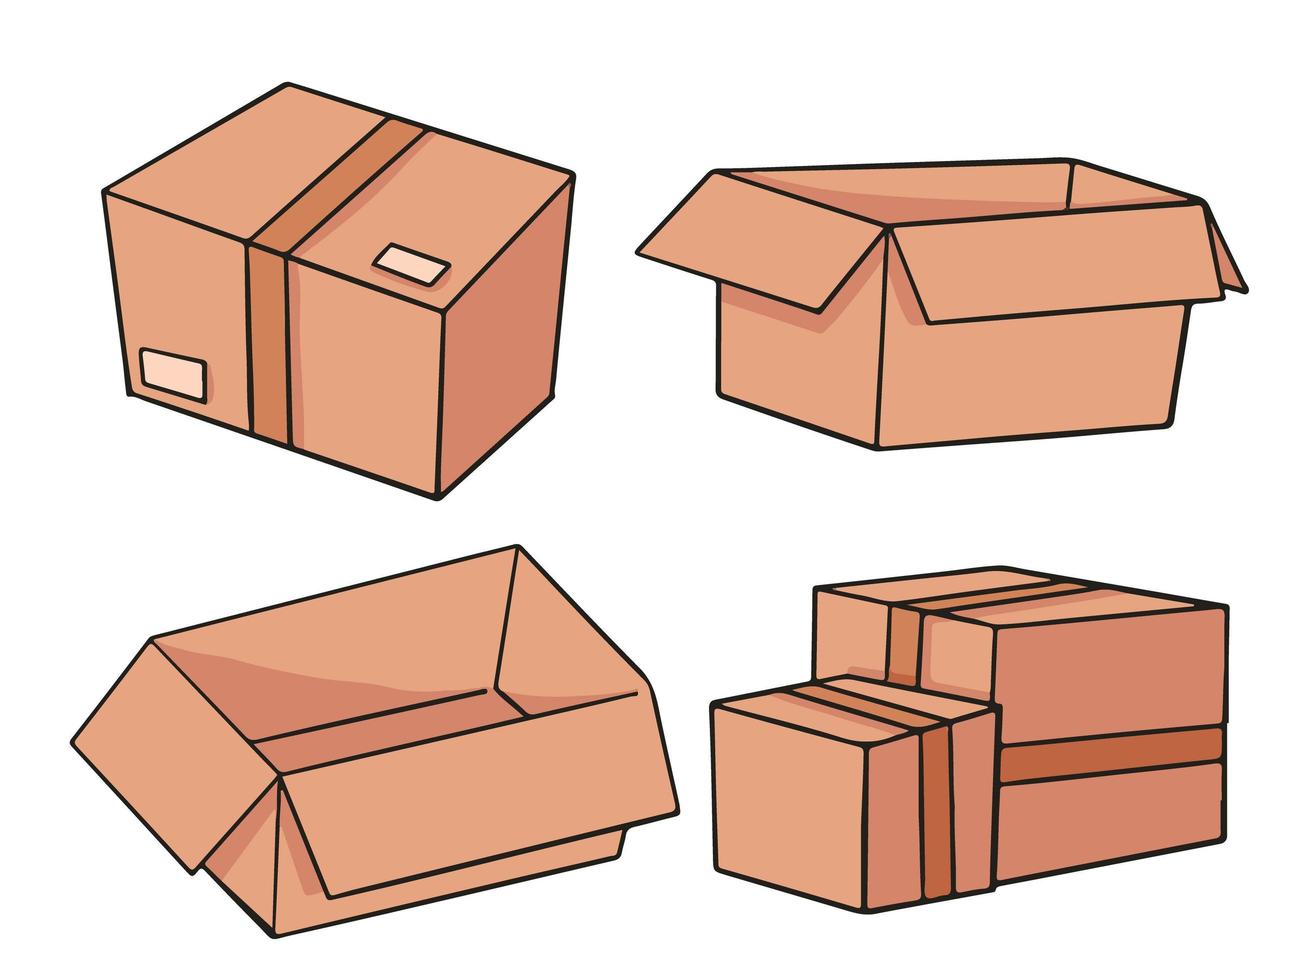 carton boxes cartoon illustration design vector